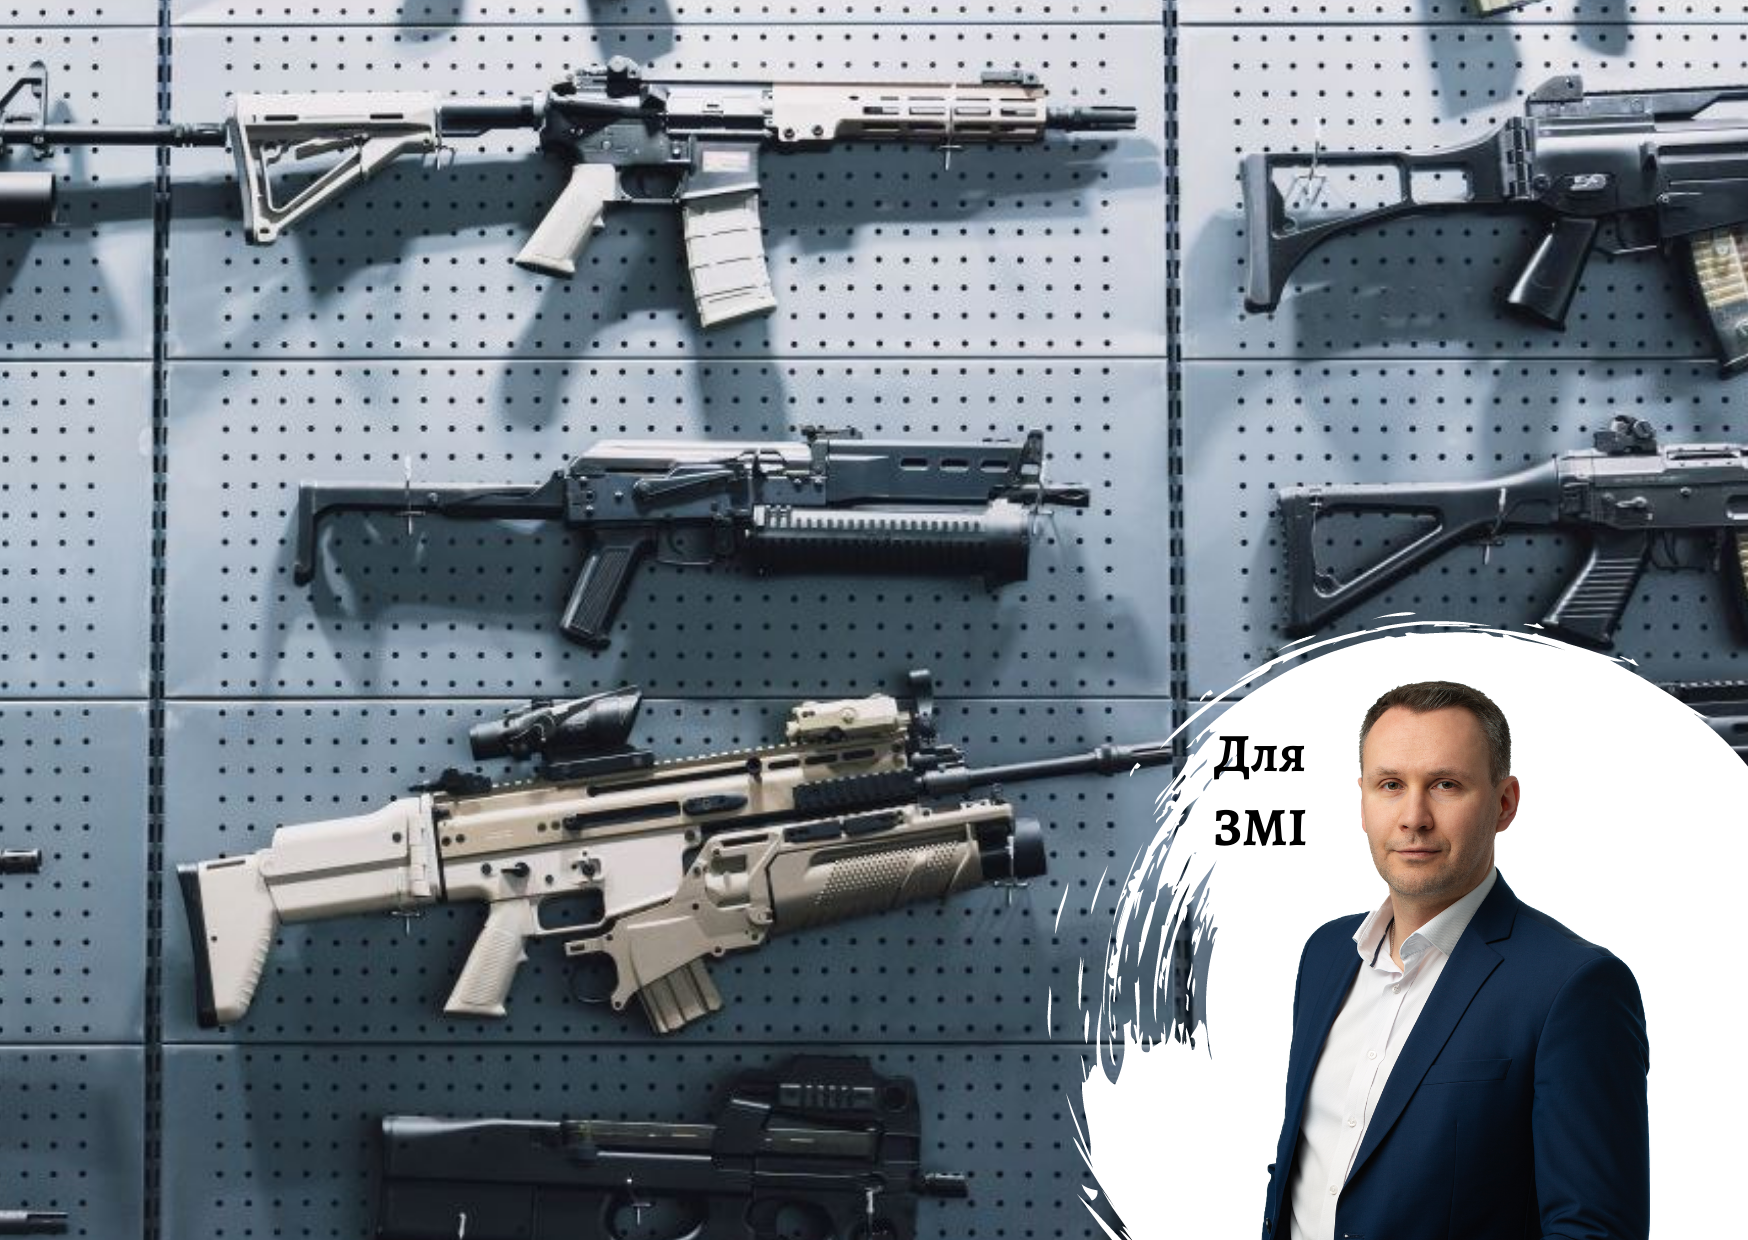 Через війну цивільні українці ринулись купувати «важку» зброю - коментарі по ринку від гендиректора Pro-Consulting Олександра Соколова. FORBES